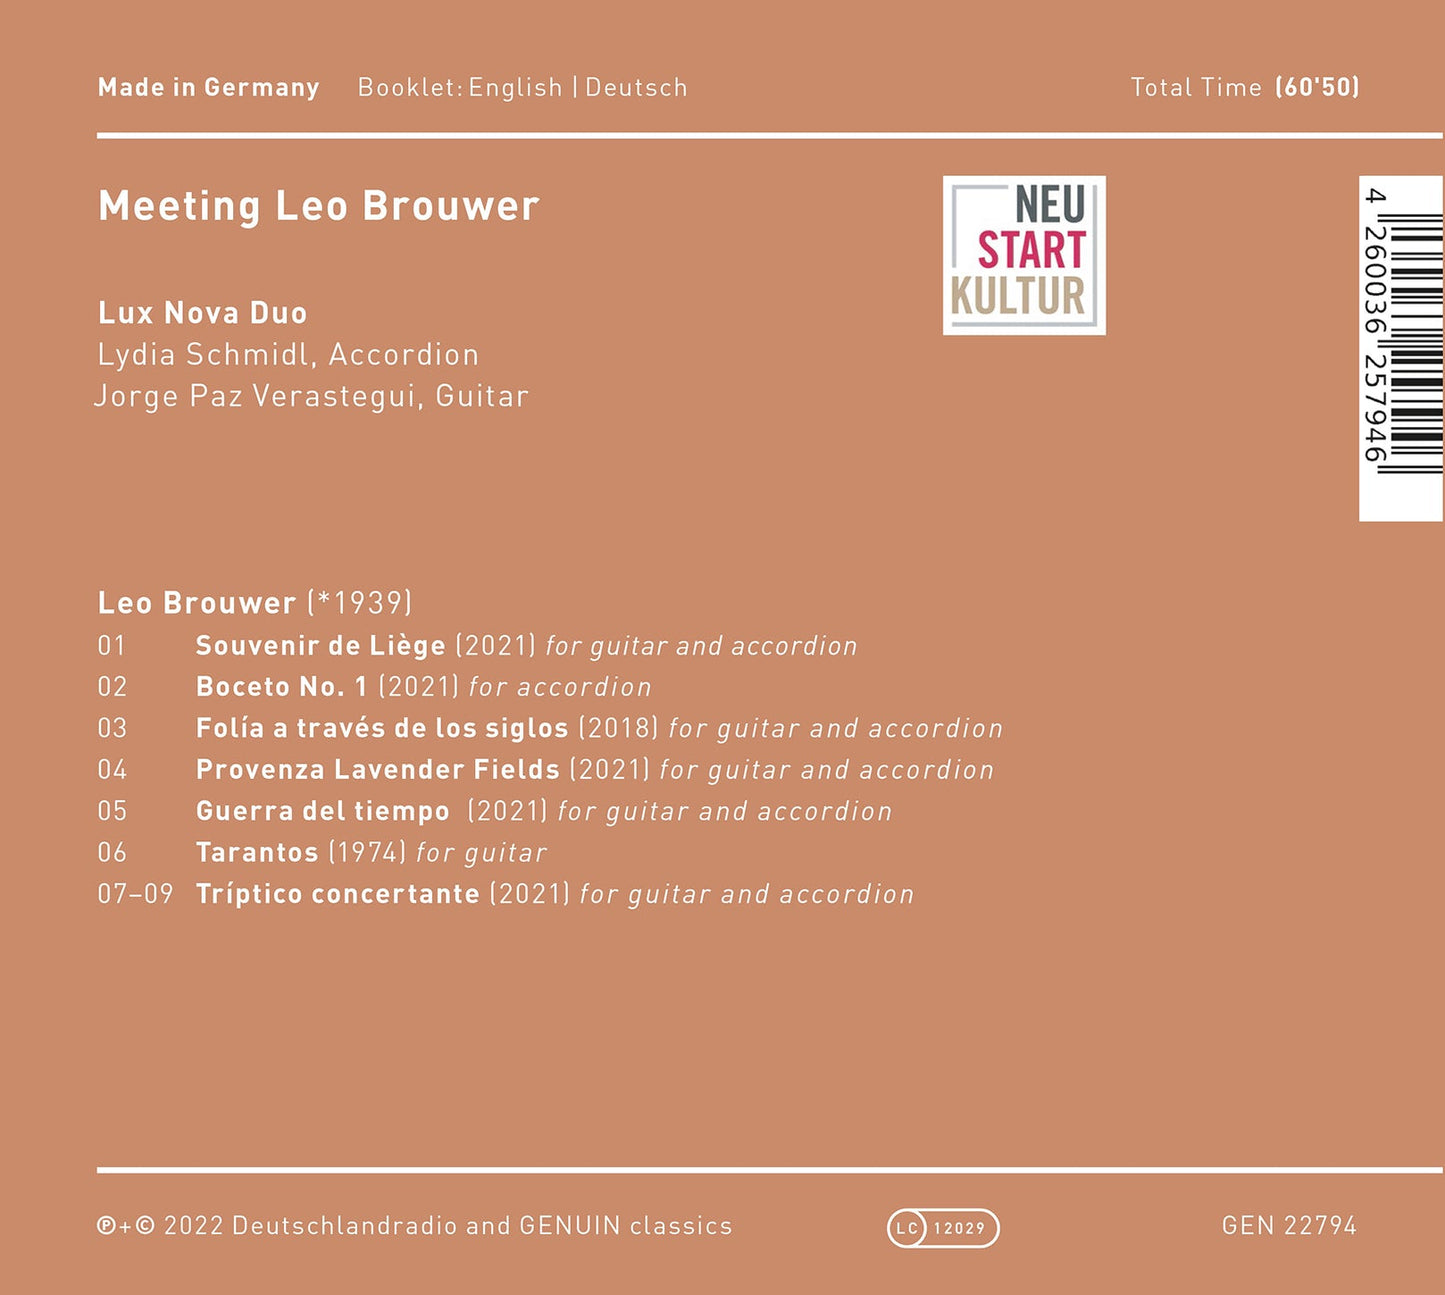 Meeting Leo Brouwer